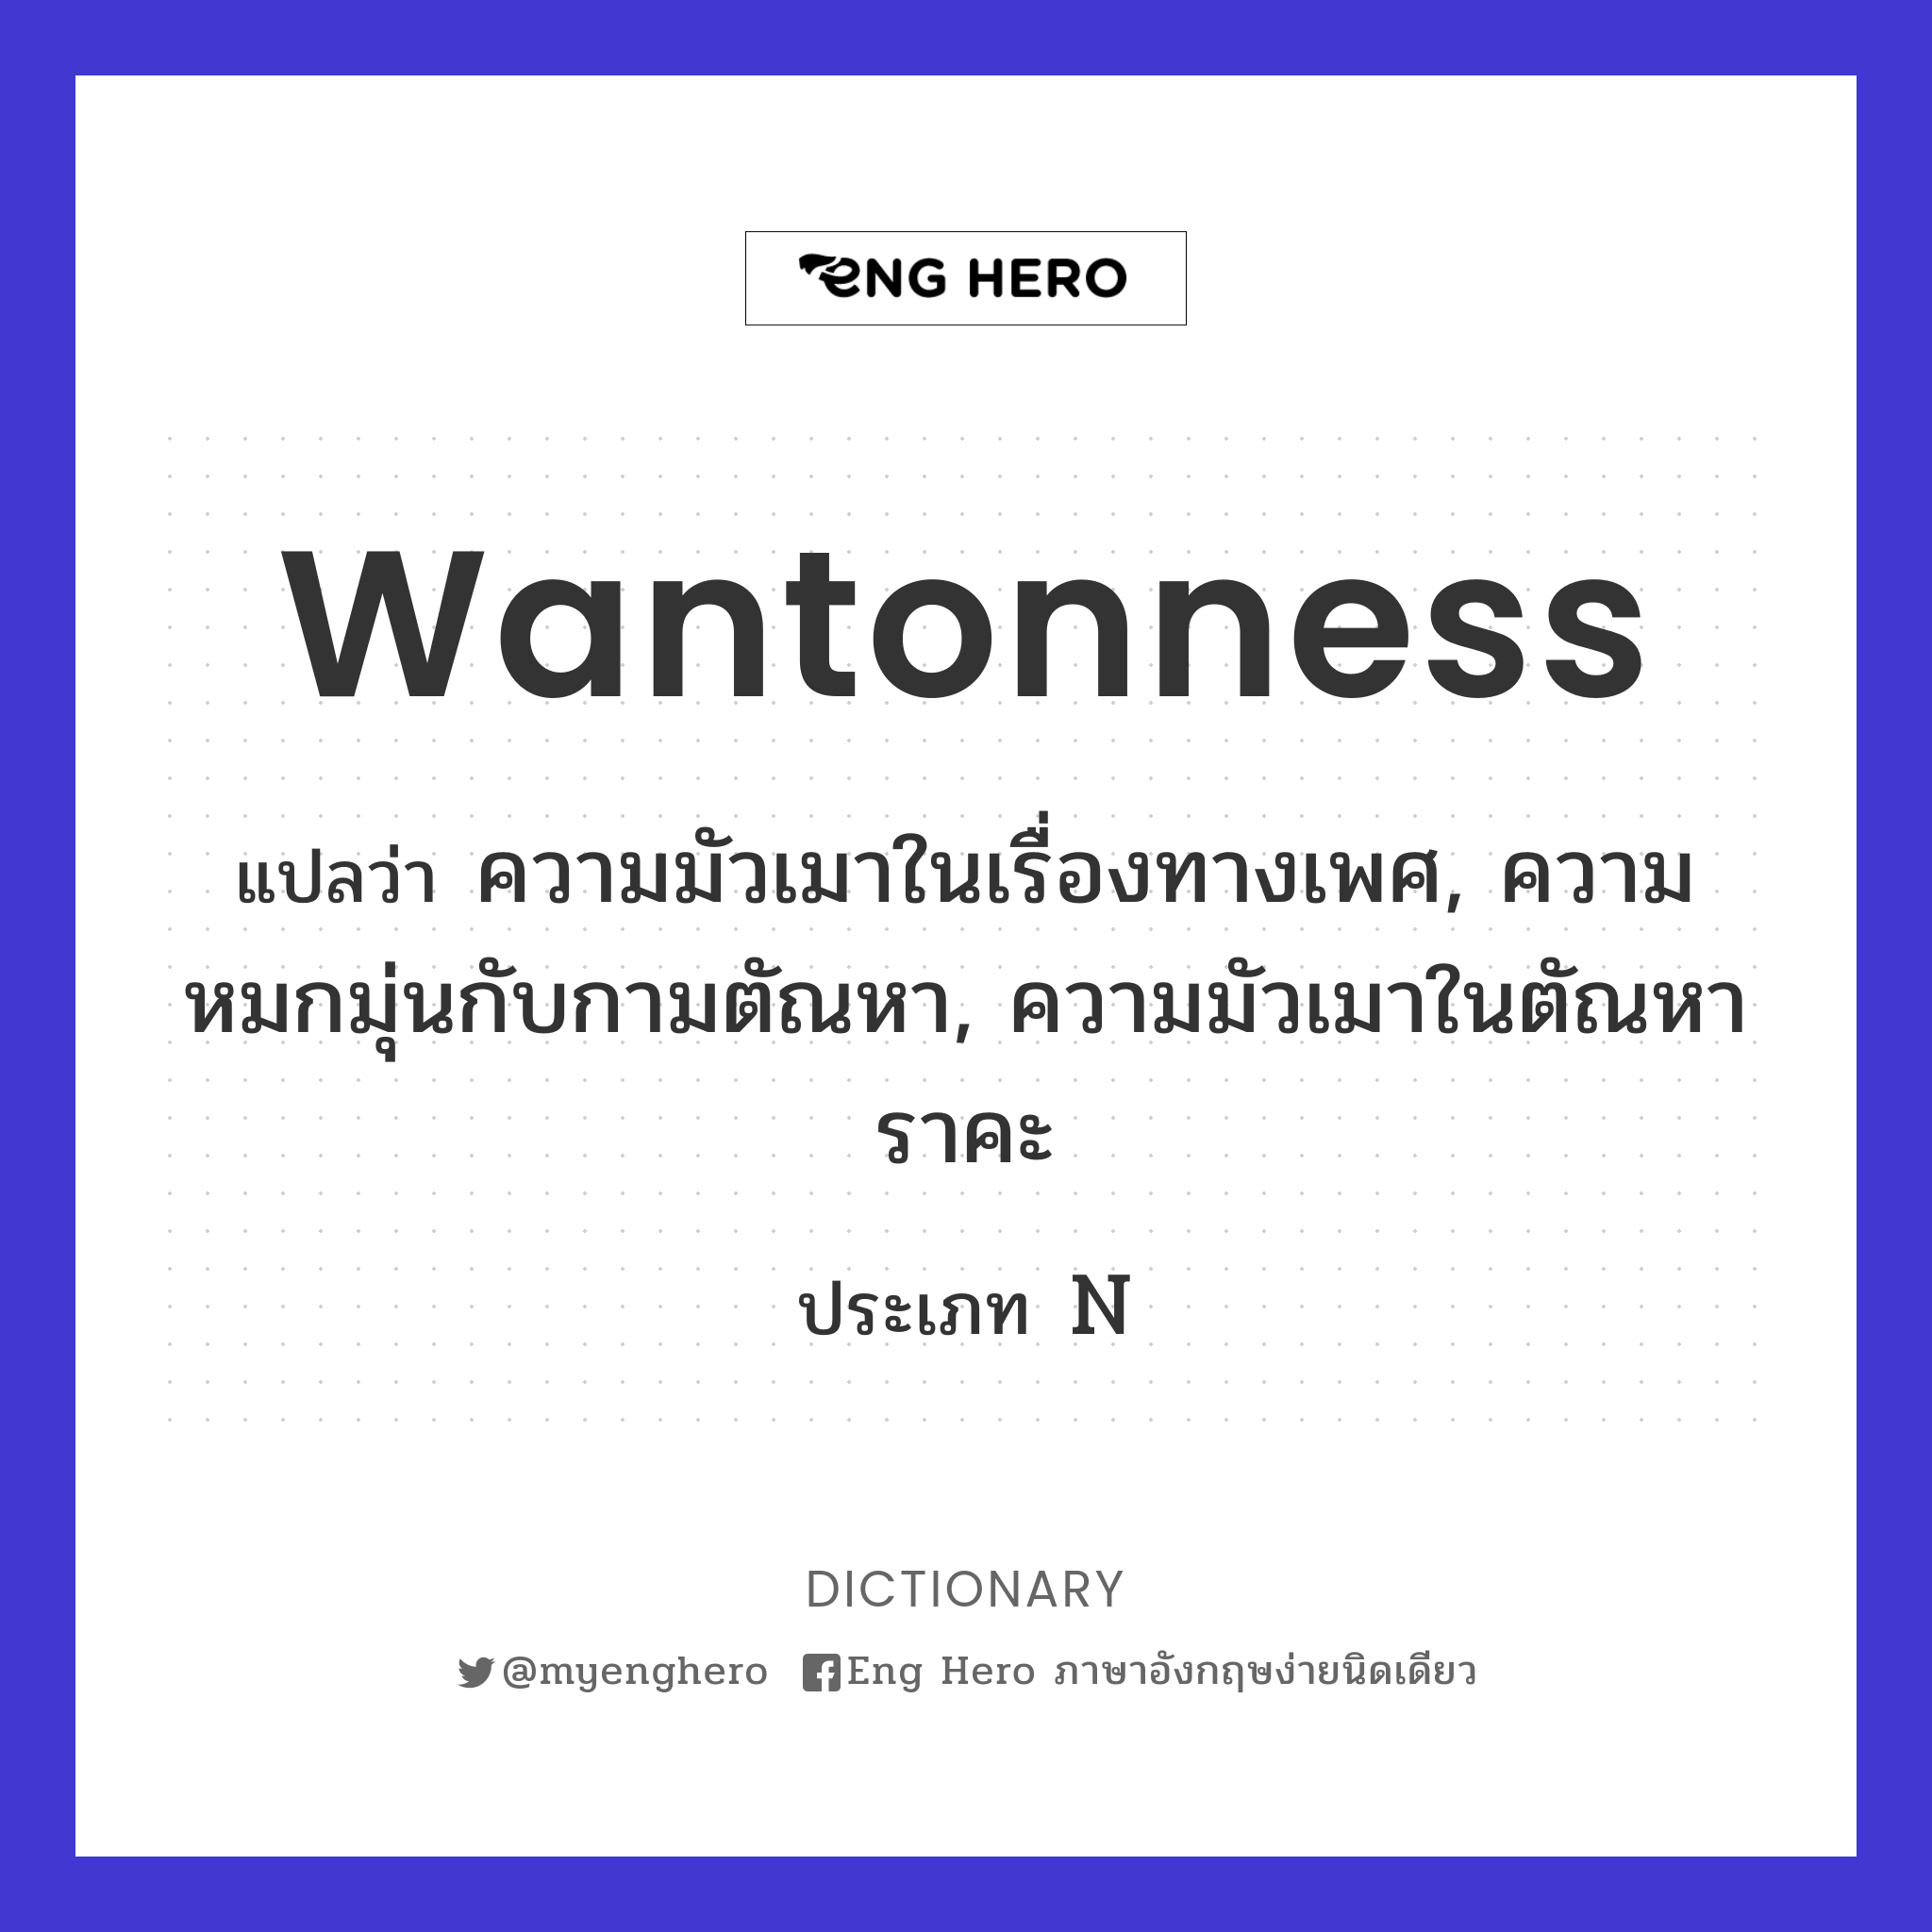 wantonness